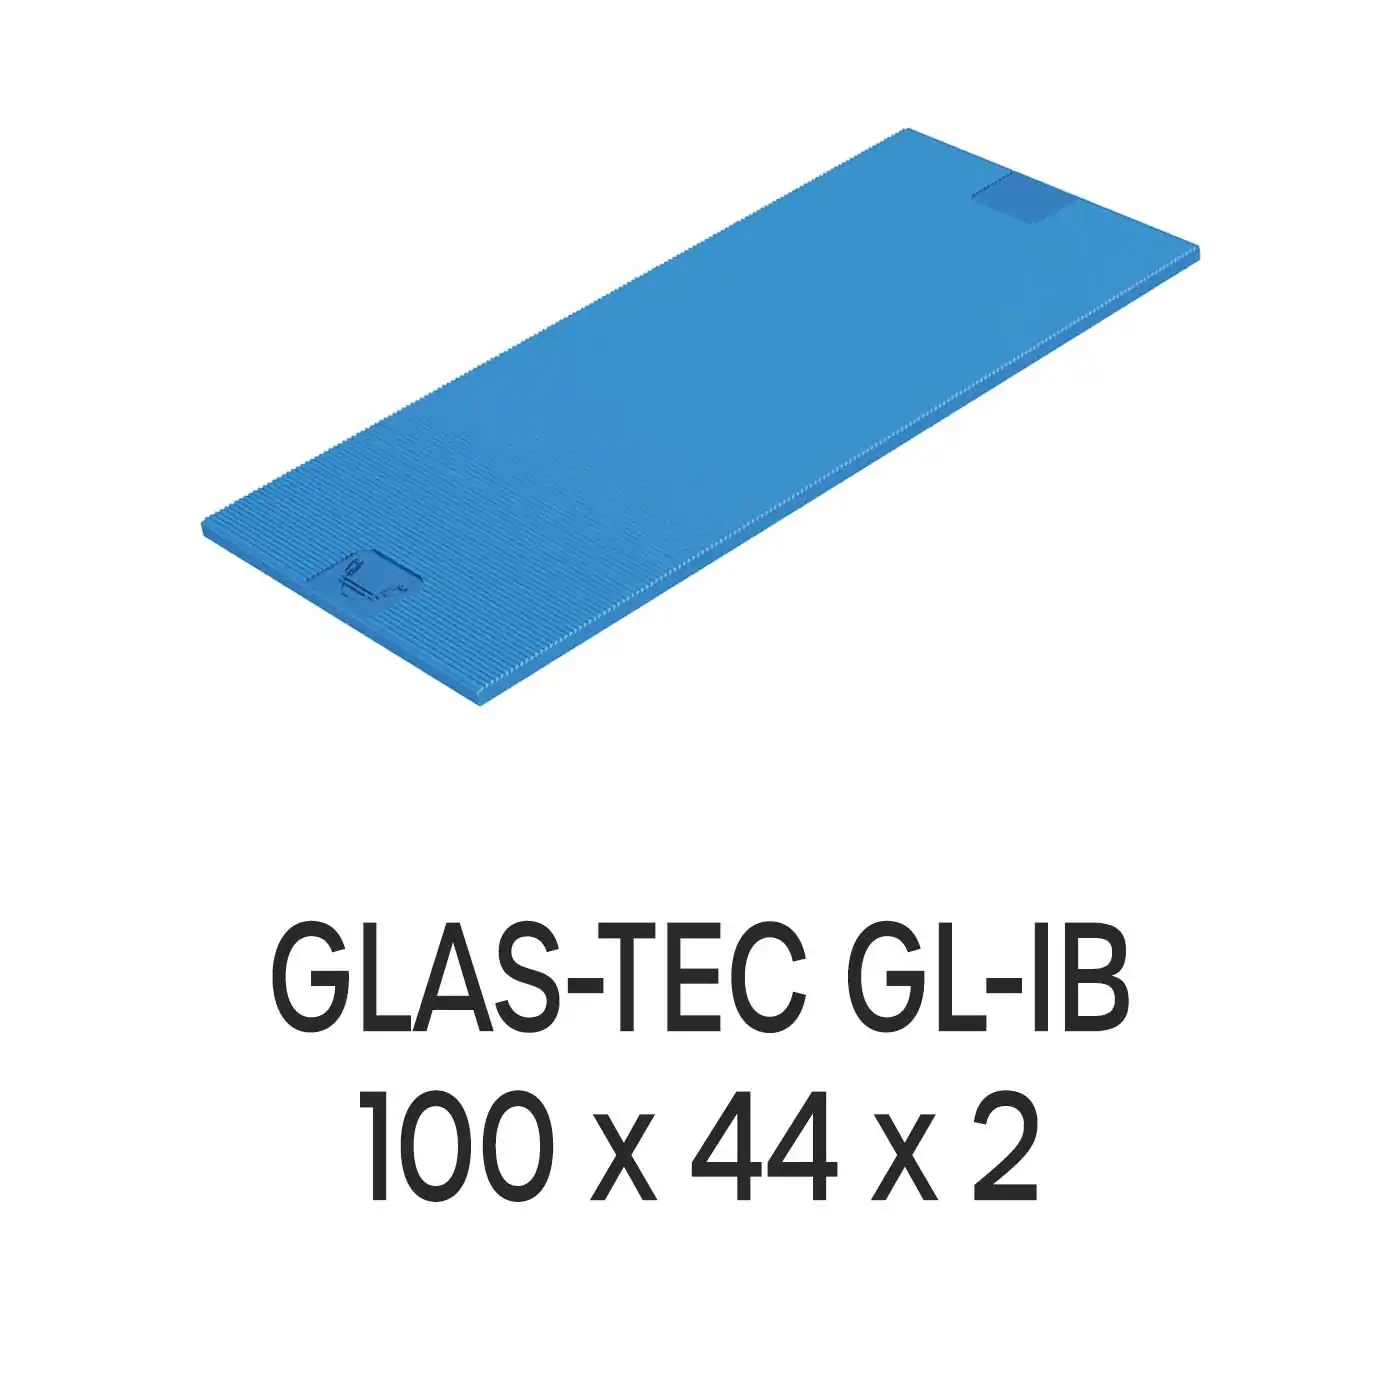 Roto Verglasungsklotz GLAS-TEC GL-IB, 100 x 44 x 1 mm, schwarz, 500 Stück